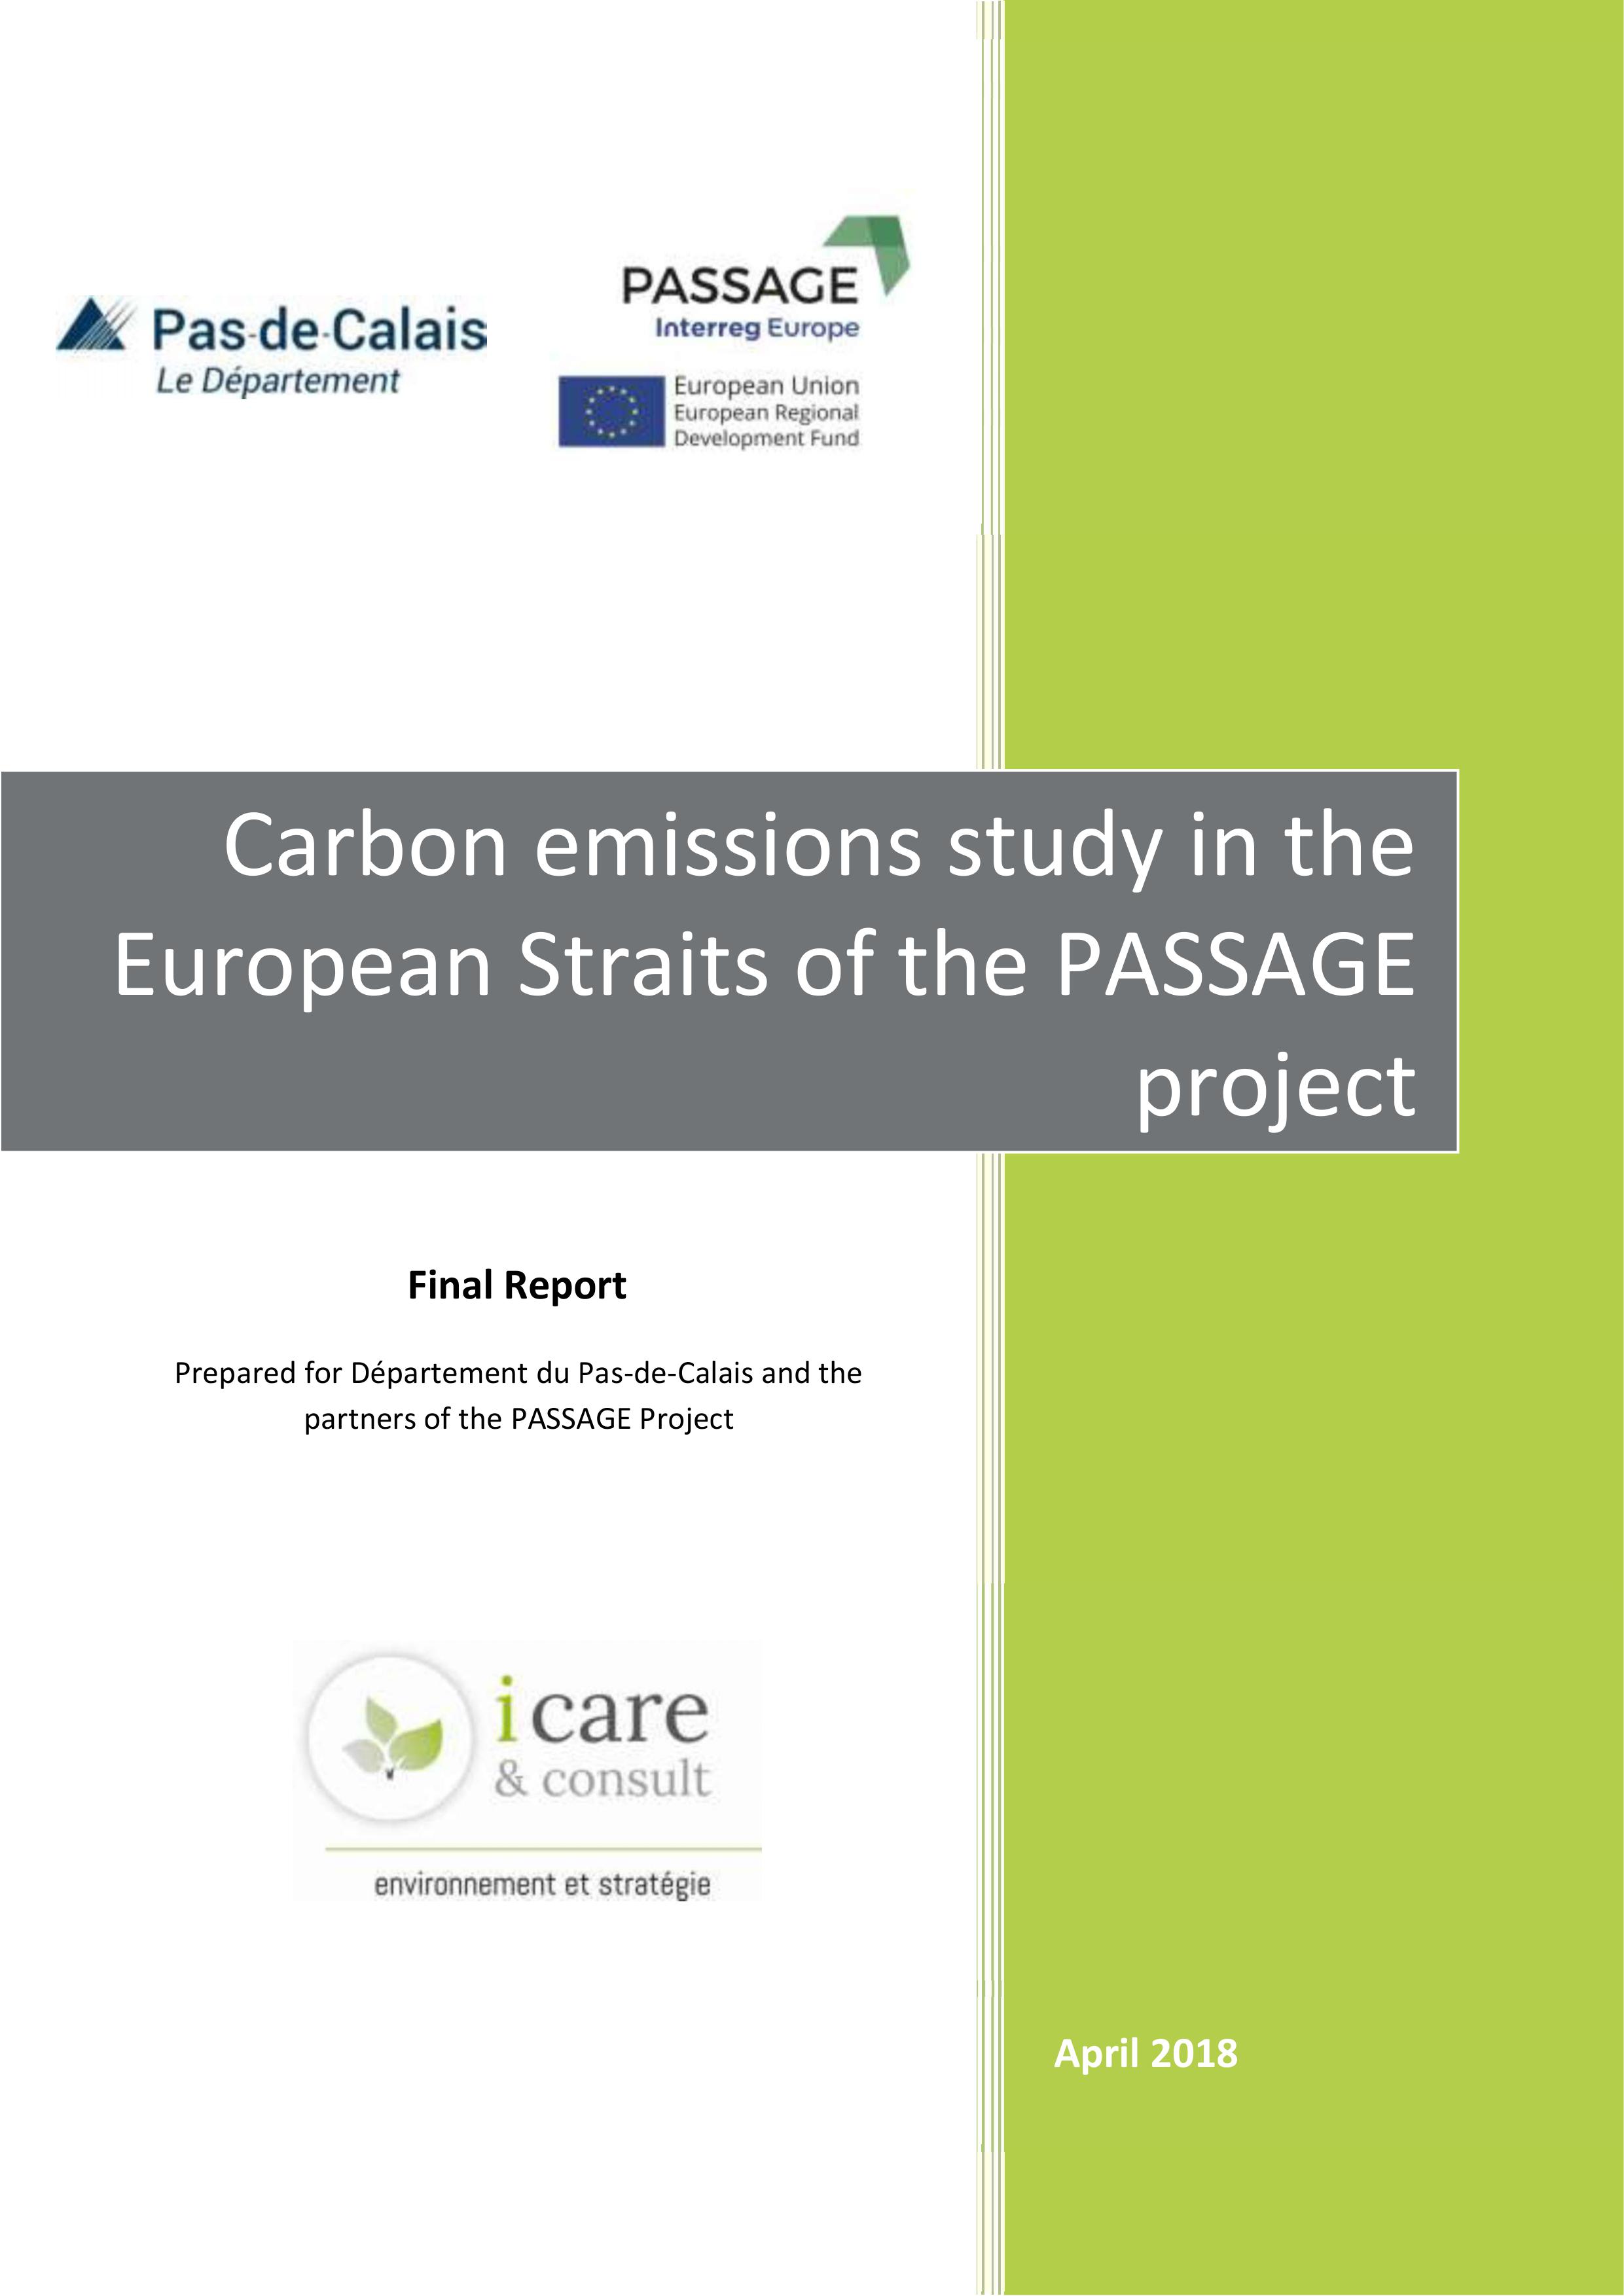 PASSAGE carbon study